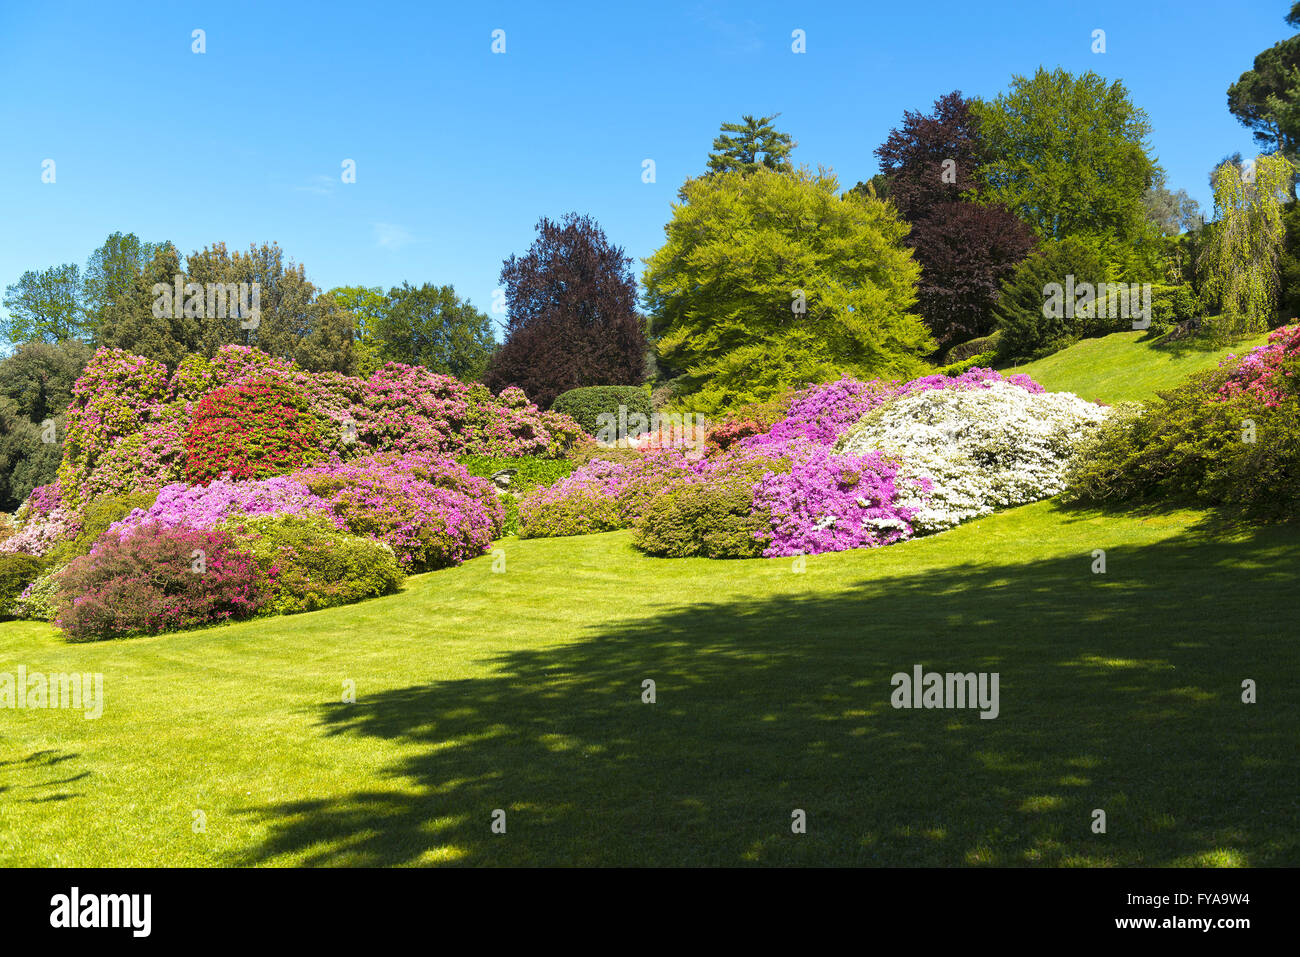 Paisaje de jardines con árboles y flores de azalea en temporada de primavera, cielo azul en segundo plano. Foto de stock